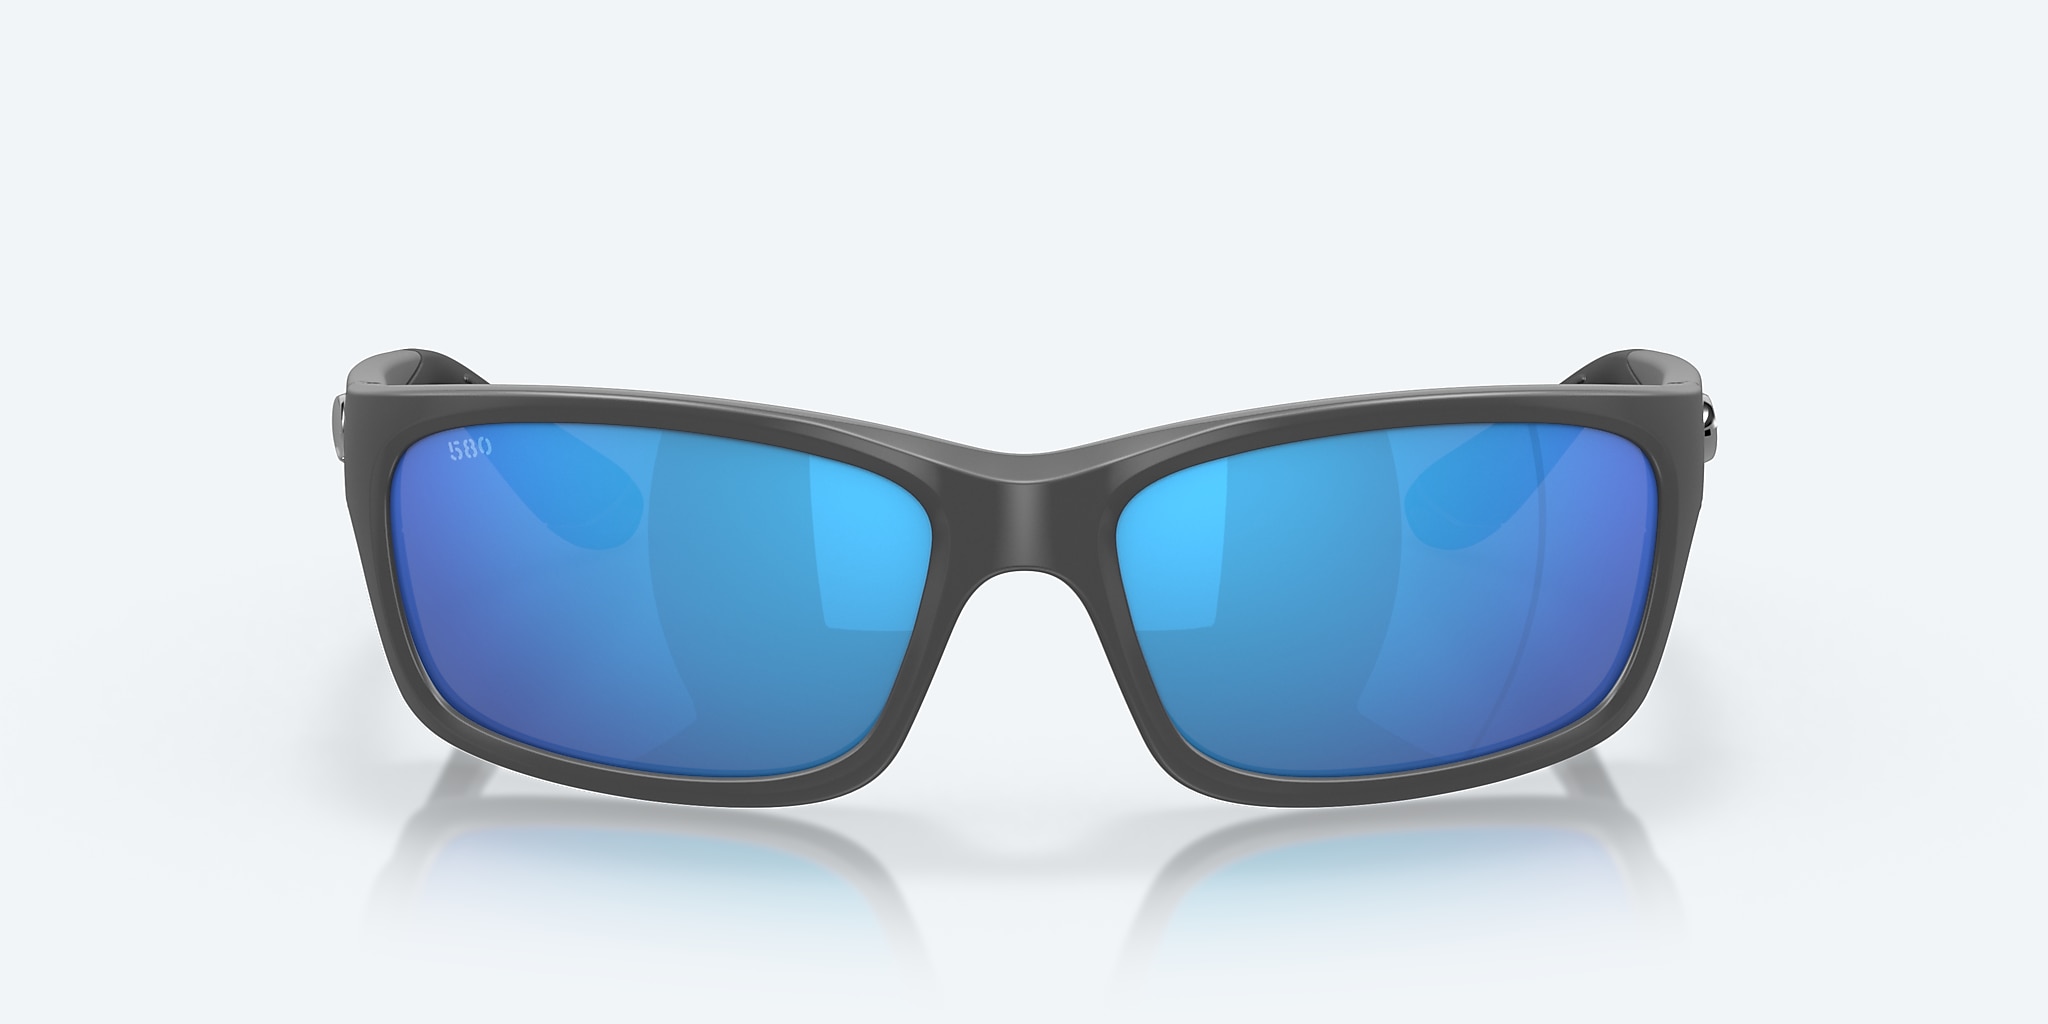 Costa Del Mar Jose Sunglasses Matte Gray / Blue Mirror 580G